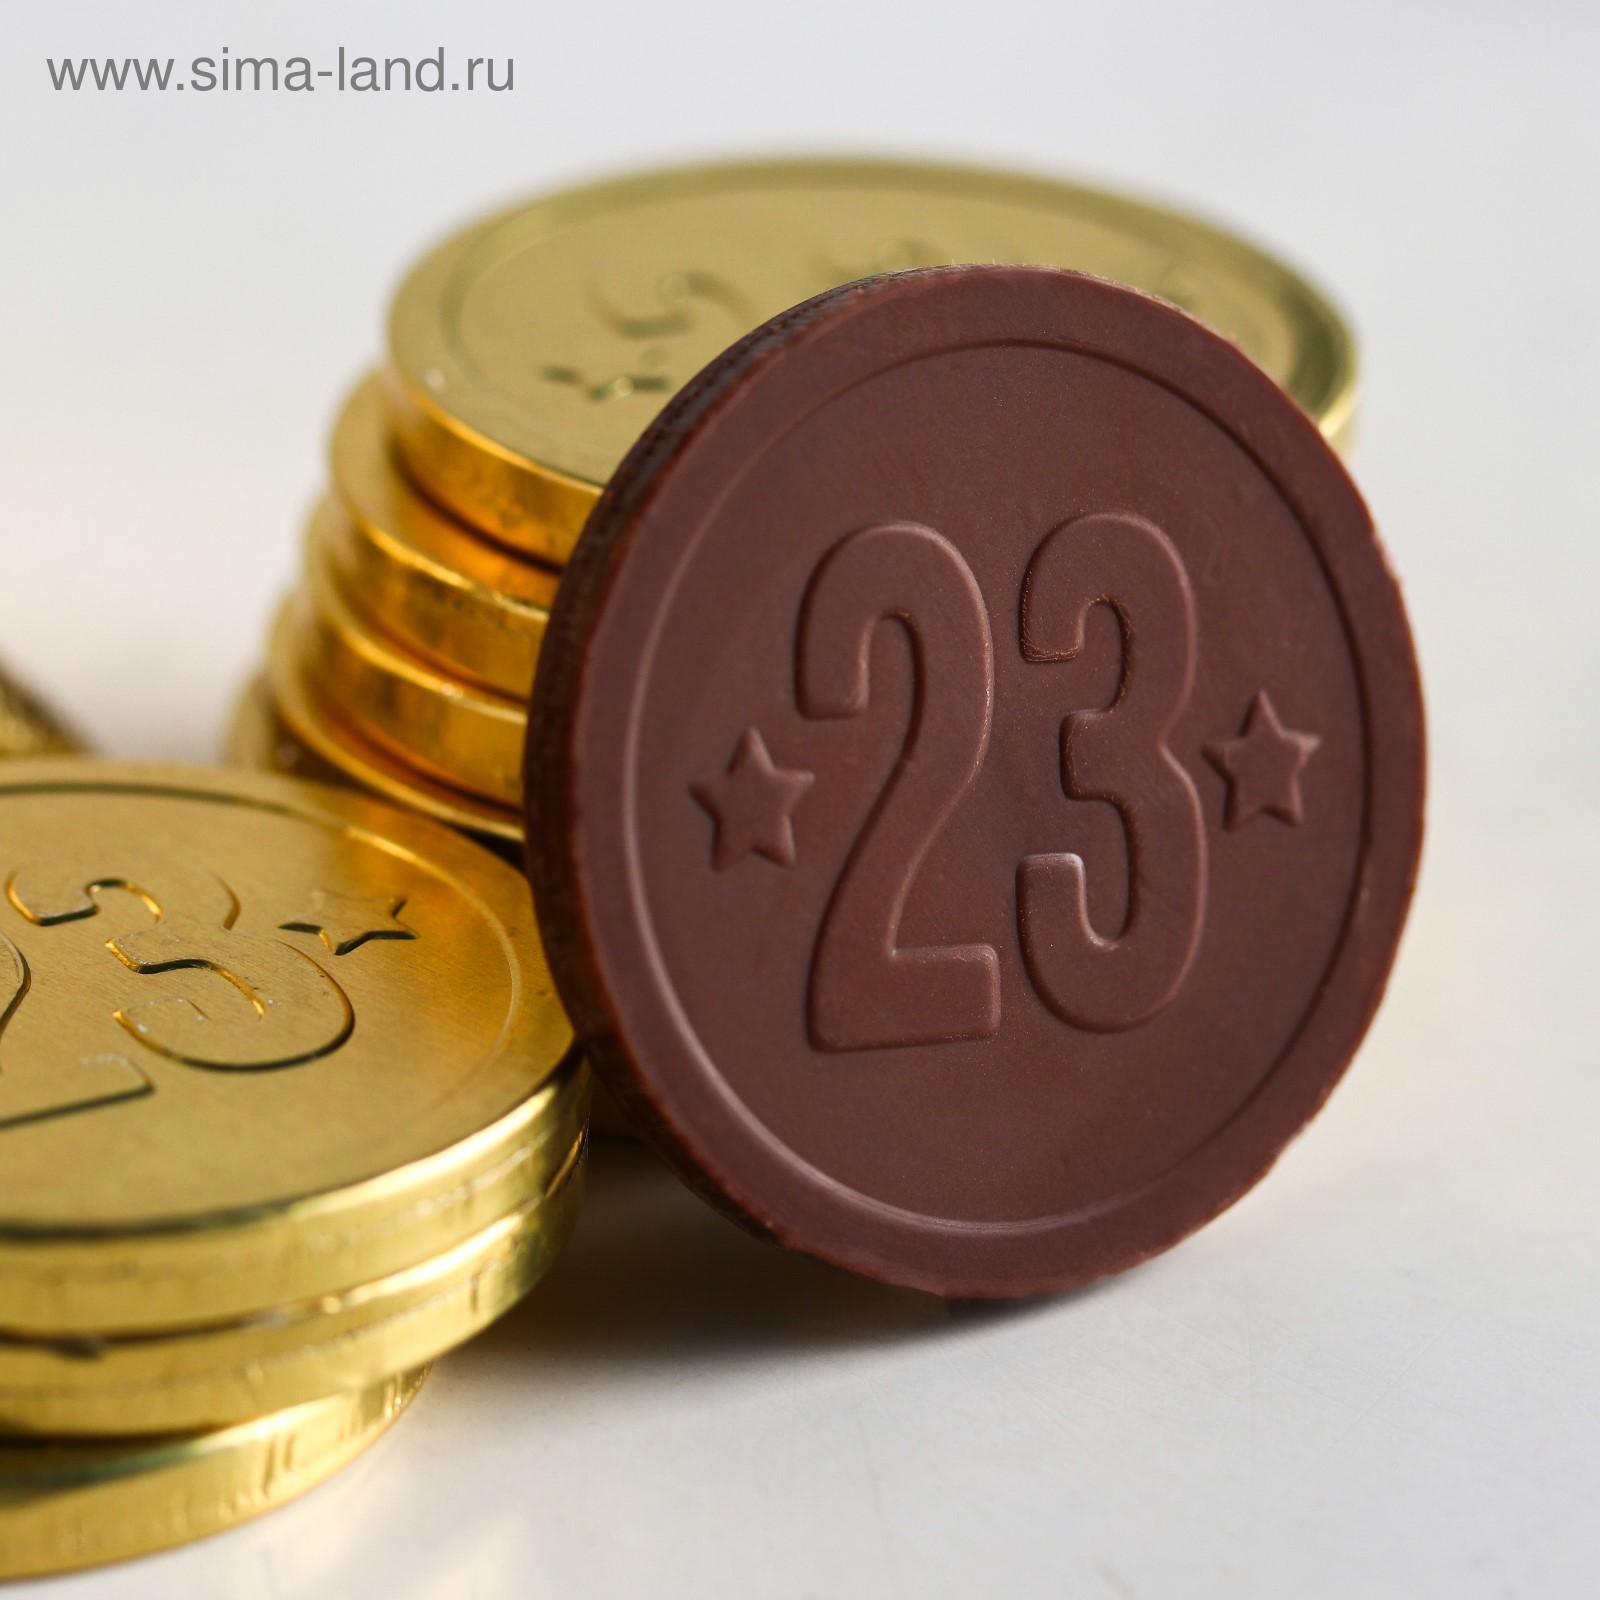 Шоколадка монета. Шоколадные монеты. Золотые шоколадные монеты. Шоколадка Монетка. Шоколад в виде монет.